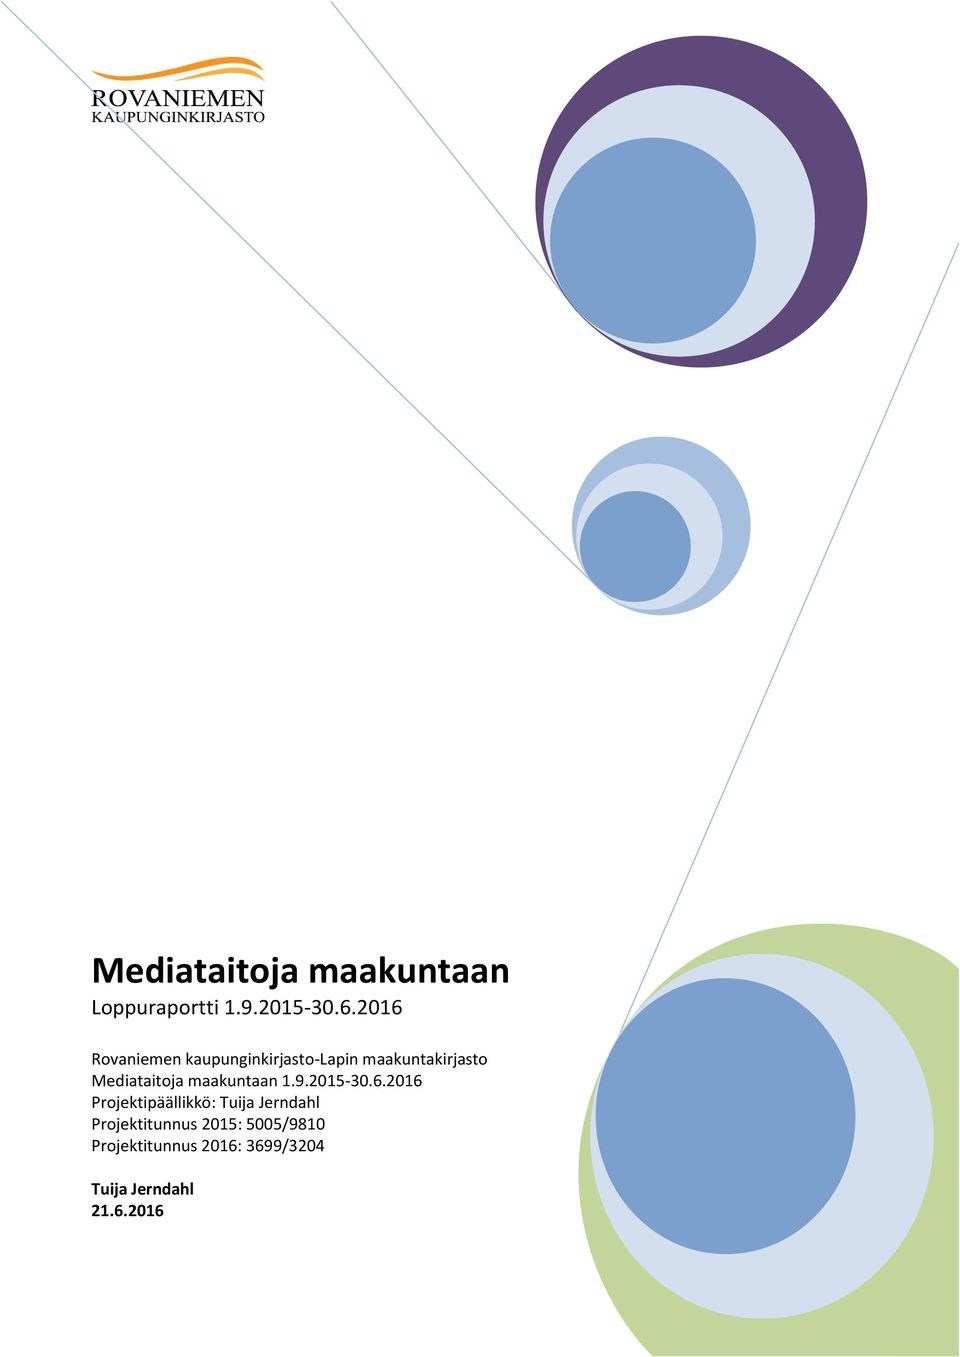 Mediataitoja maakuntaan 1.9.2015-30.6.